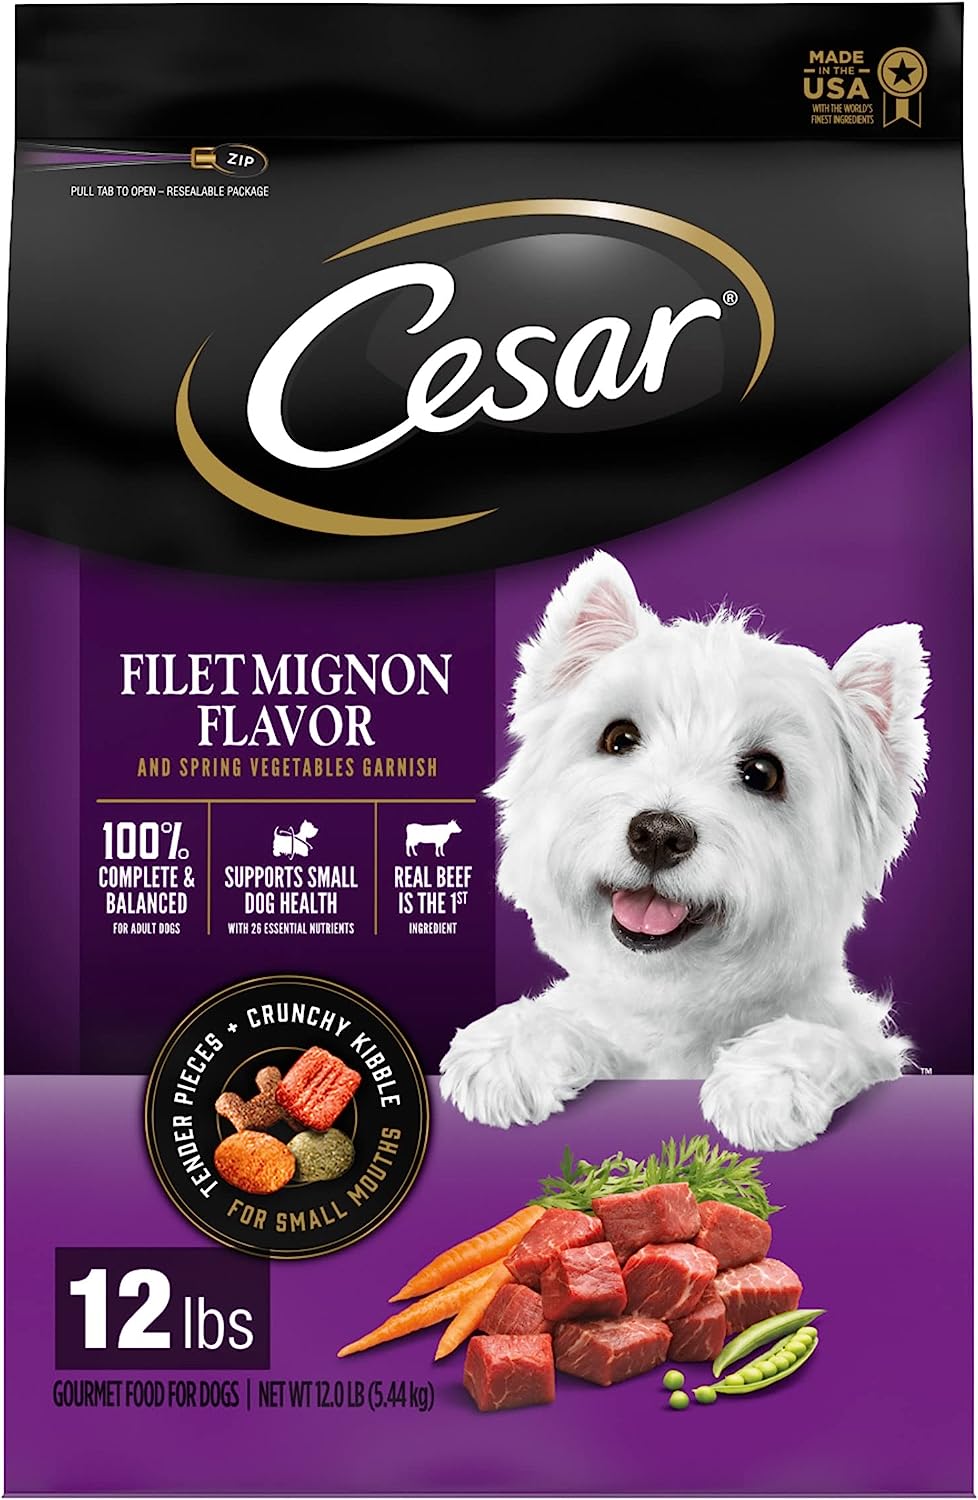 Cesar Filet Mignon Flavor & Spring Vegetables Garnish Dry Dog Food – Gallery Image 1